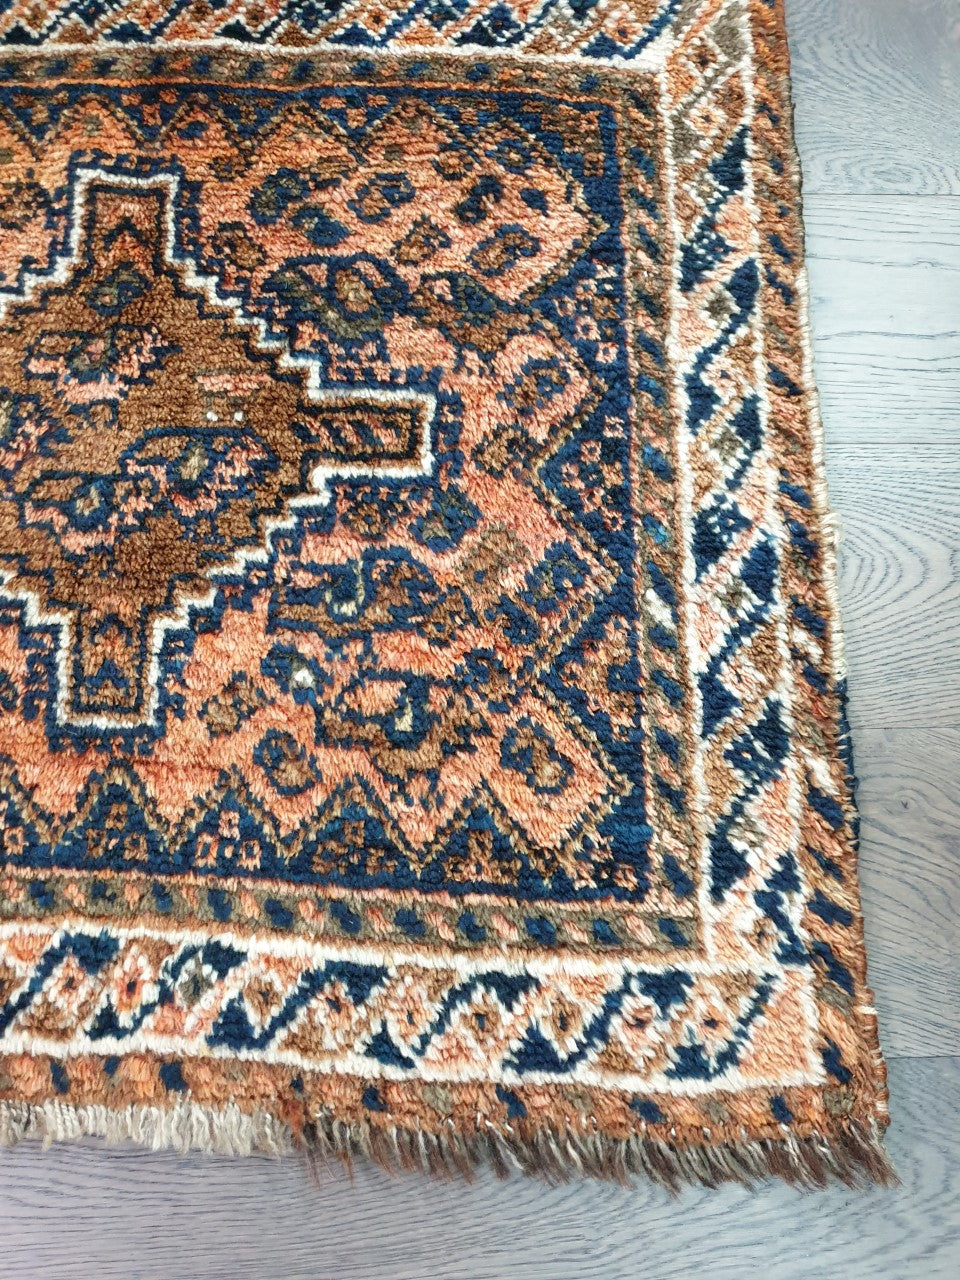 Antique Persian Shiraz rug - Hakiemie Rug Gallery